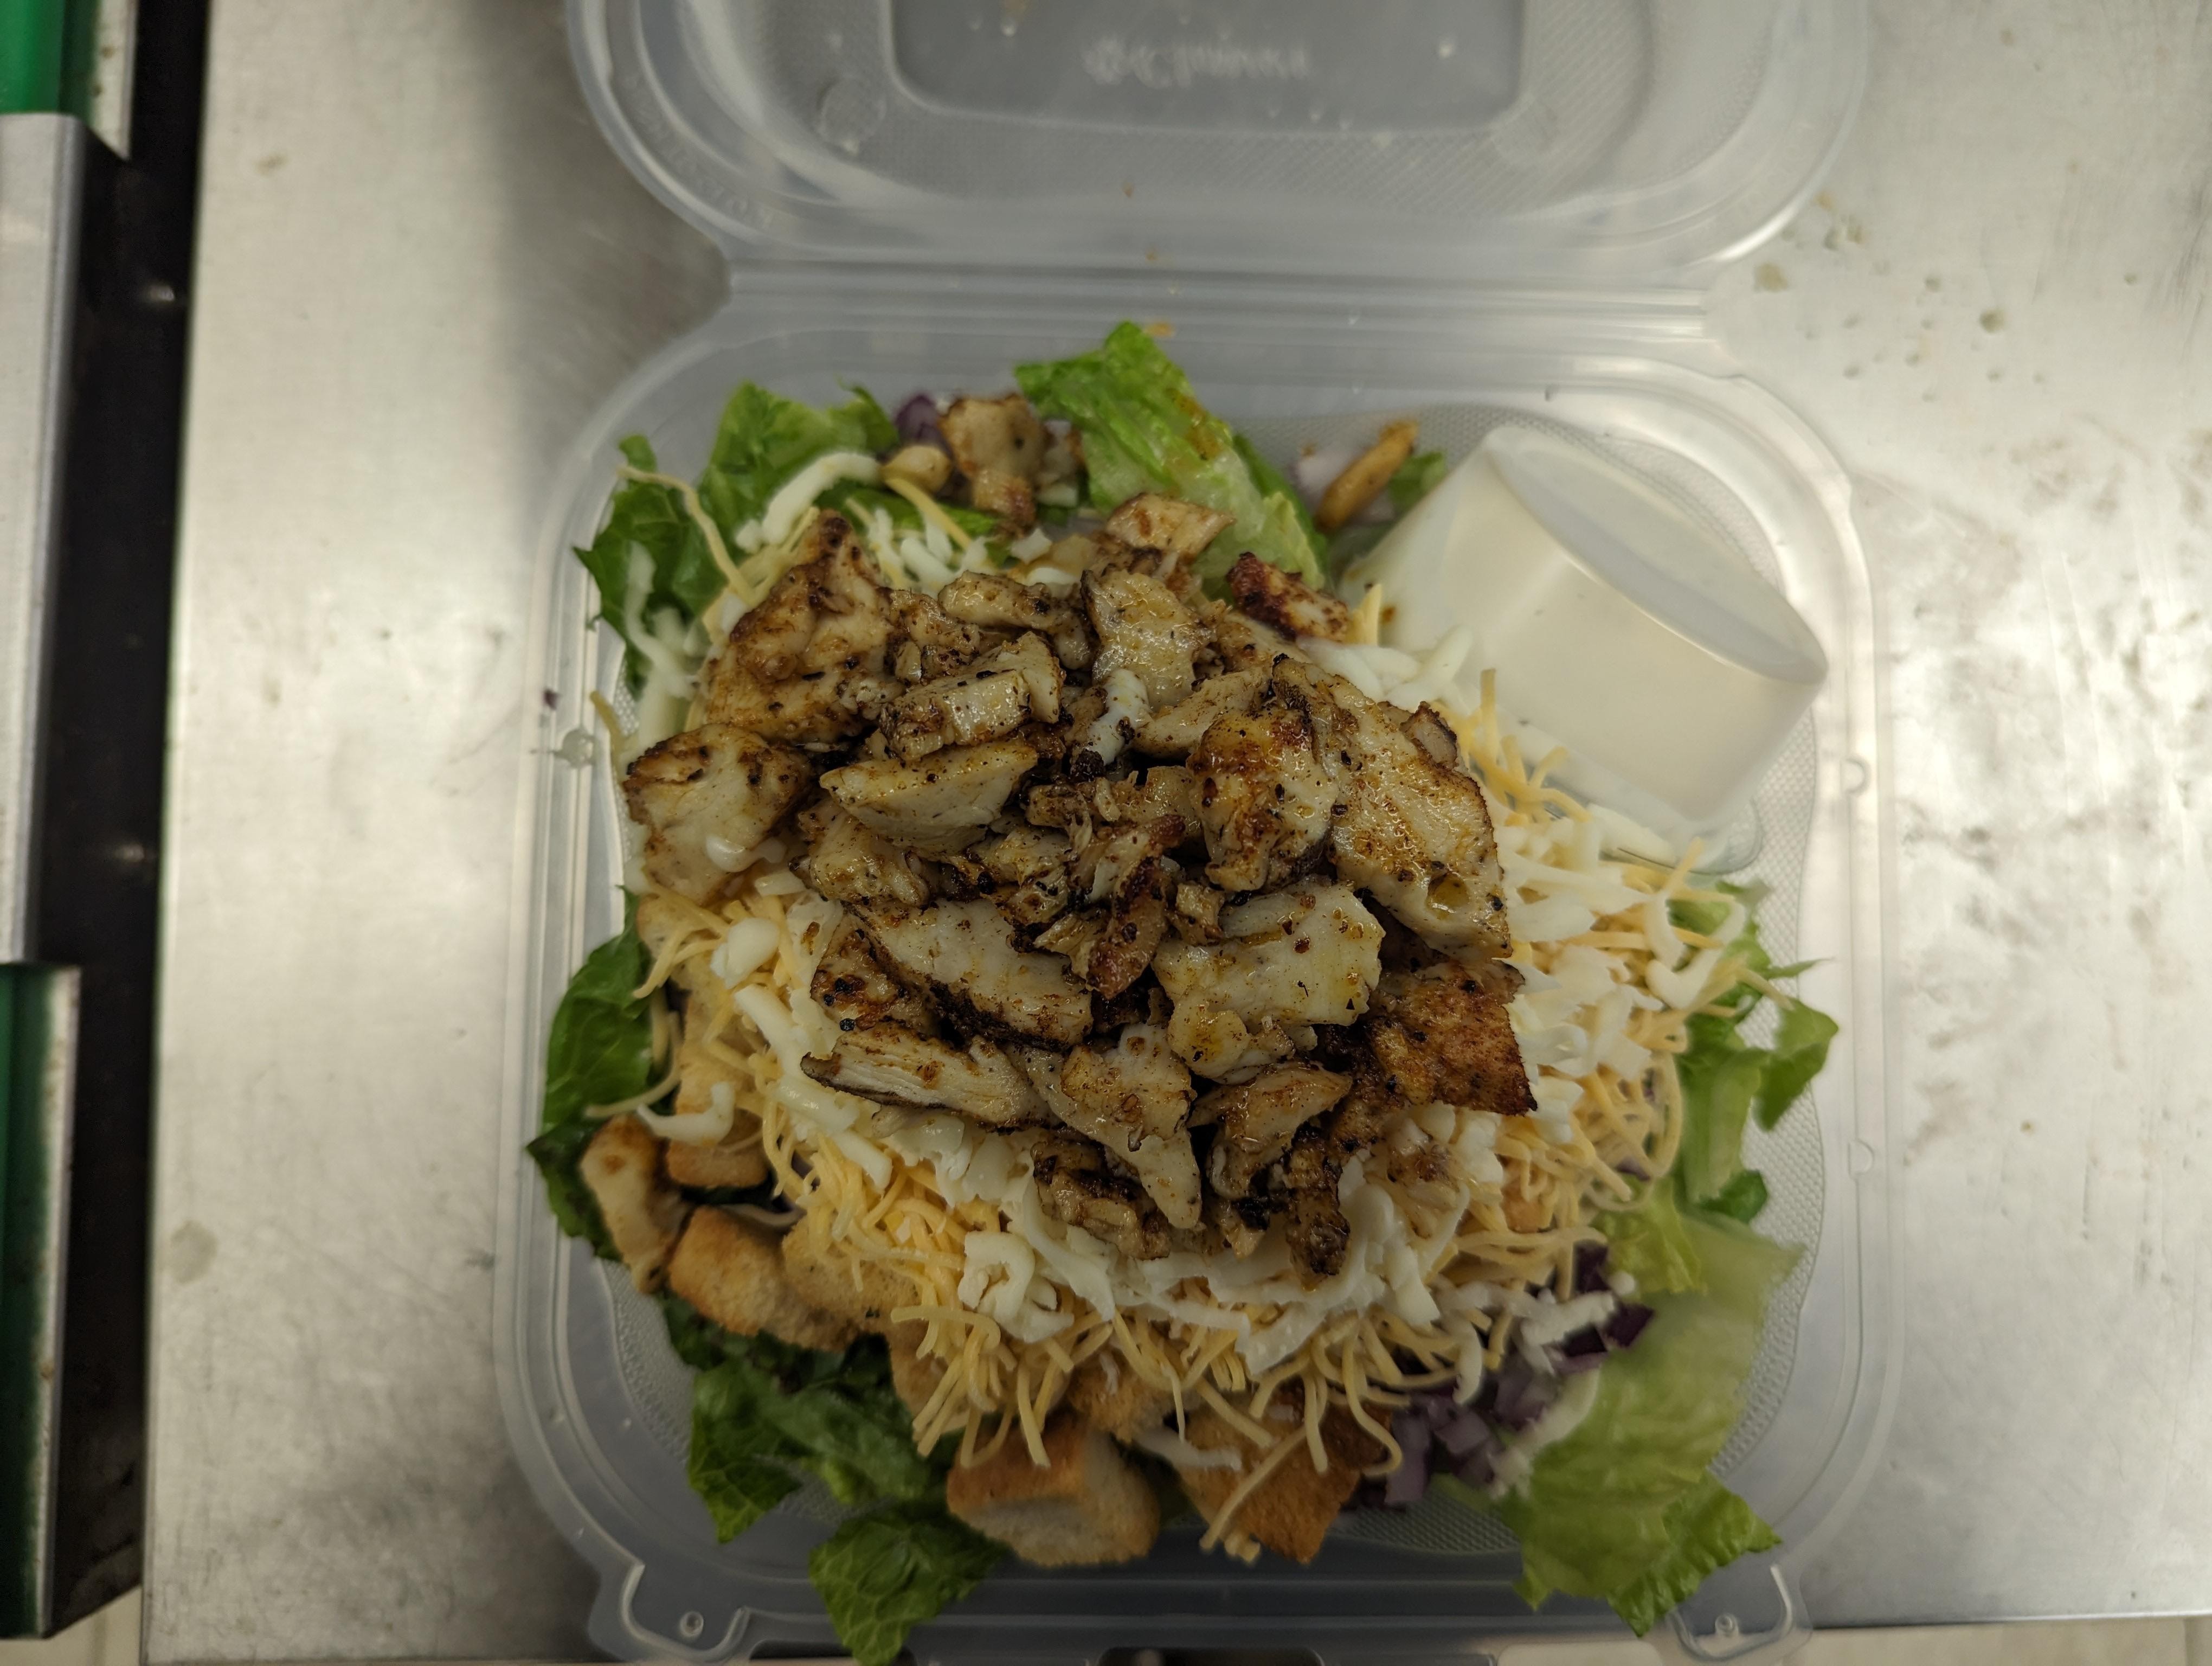 Cajun Chicken Salad